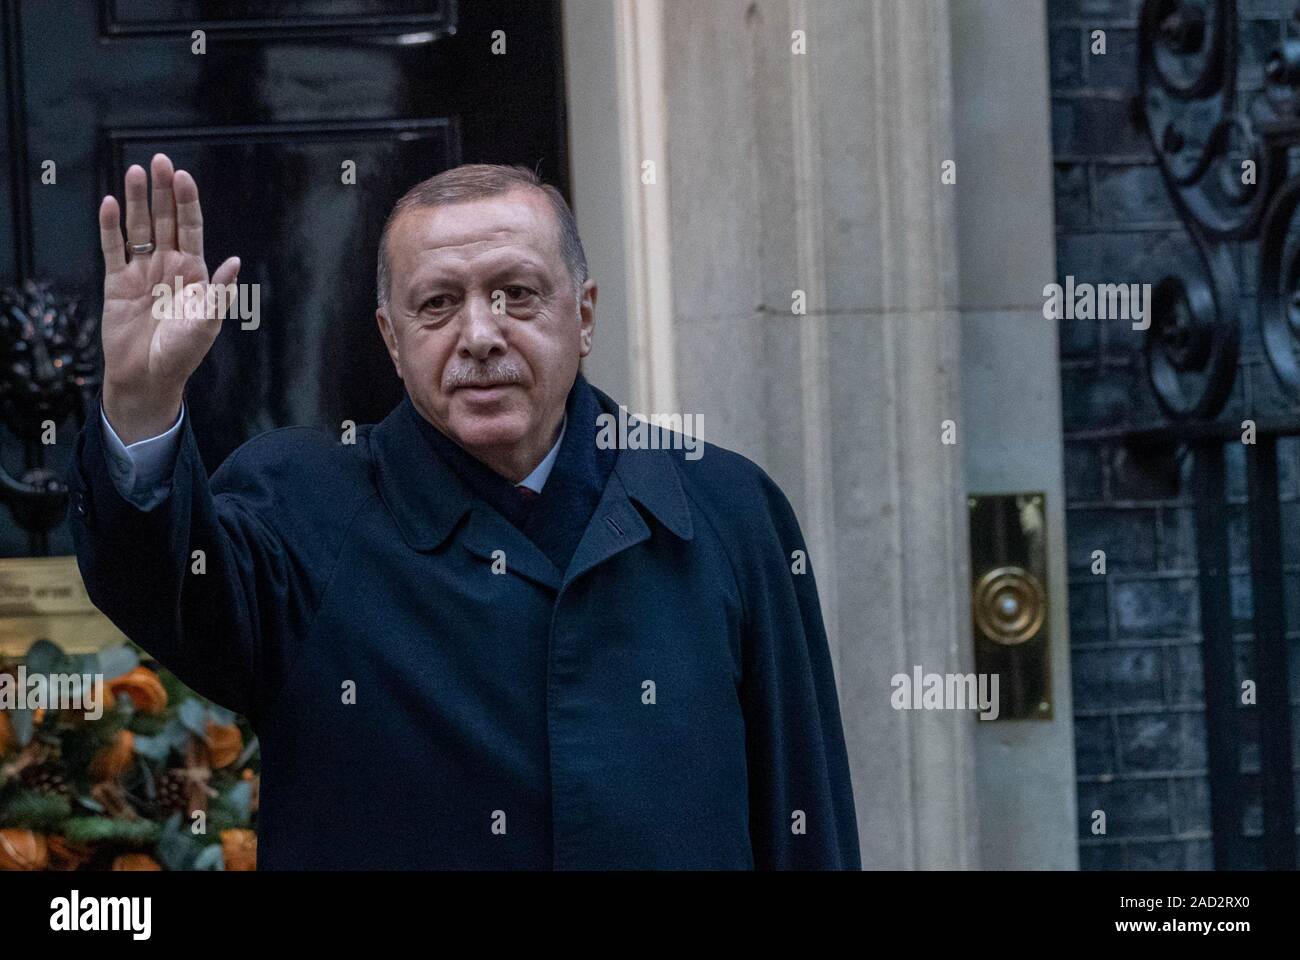 31/12/2019 London UK 3e les dirigeants de l'OTAN arrivent au 10 Downing Street durant le sommet de l'OTAN, Recep Tayyip Erdogan, le président de la Turquie, de crédit Ian DavidsonAlamy Live News Banque D'Images